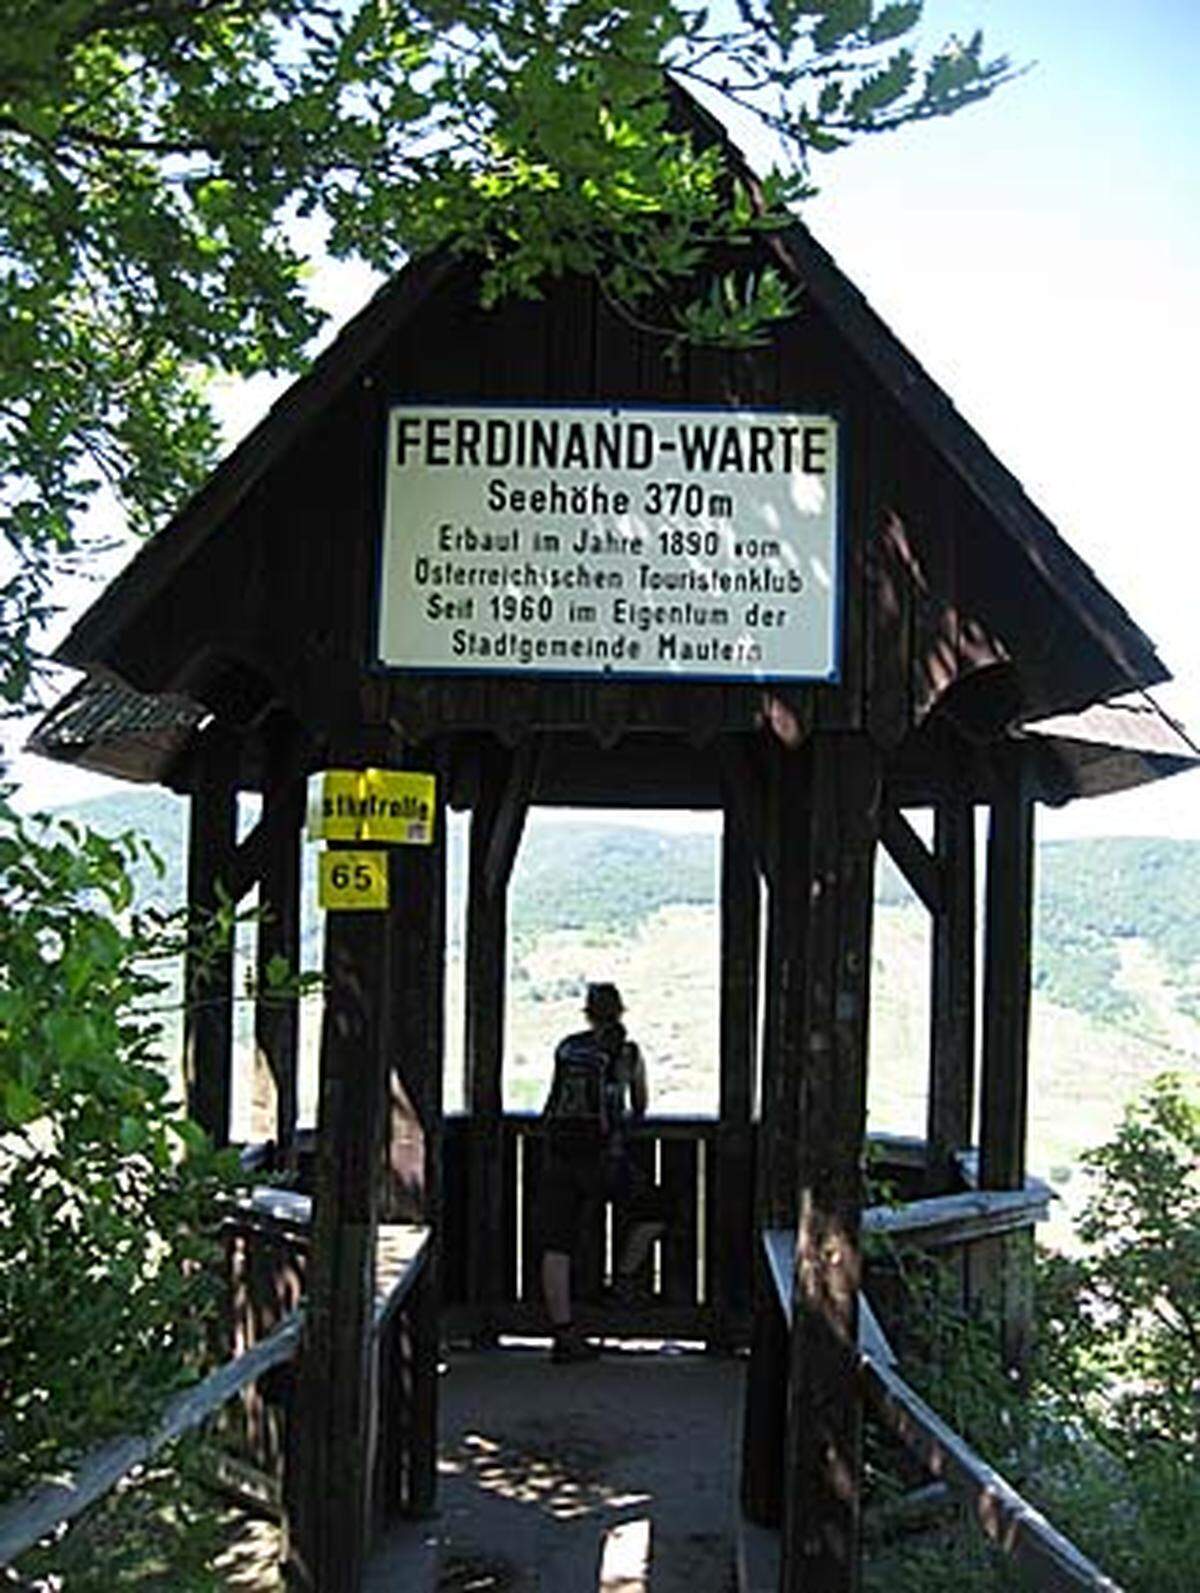 Über einen Teil der römischen Limesstraße kommt man zur Ferdinandswarte, die auf einem Felsen über dem Donautal thront. Von hier aus hat man einen guten Ausblick, von der Ruine Dürnstein zur linken bis Krems auf der rechten Seite.